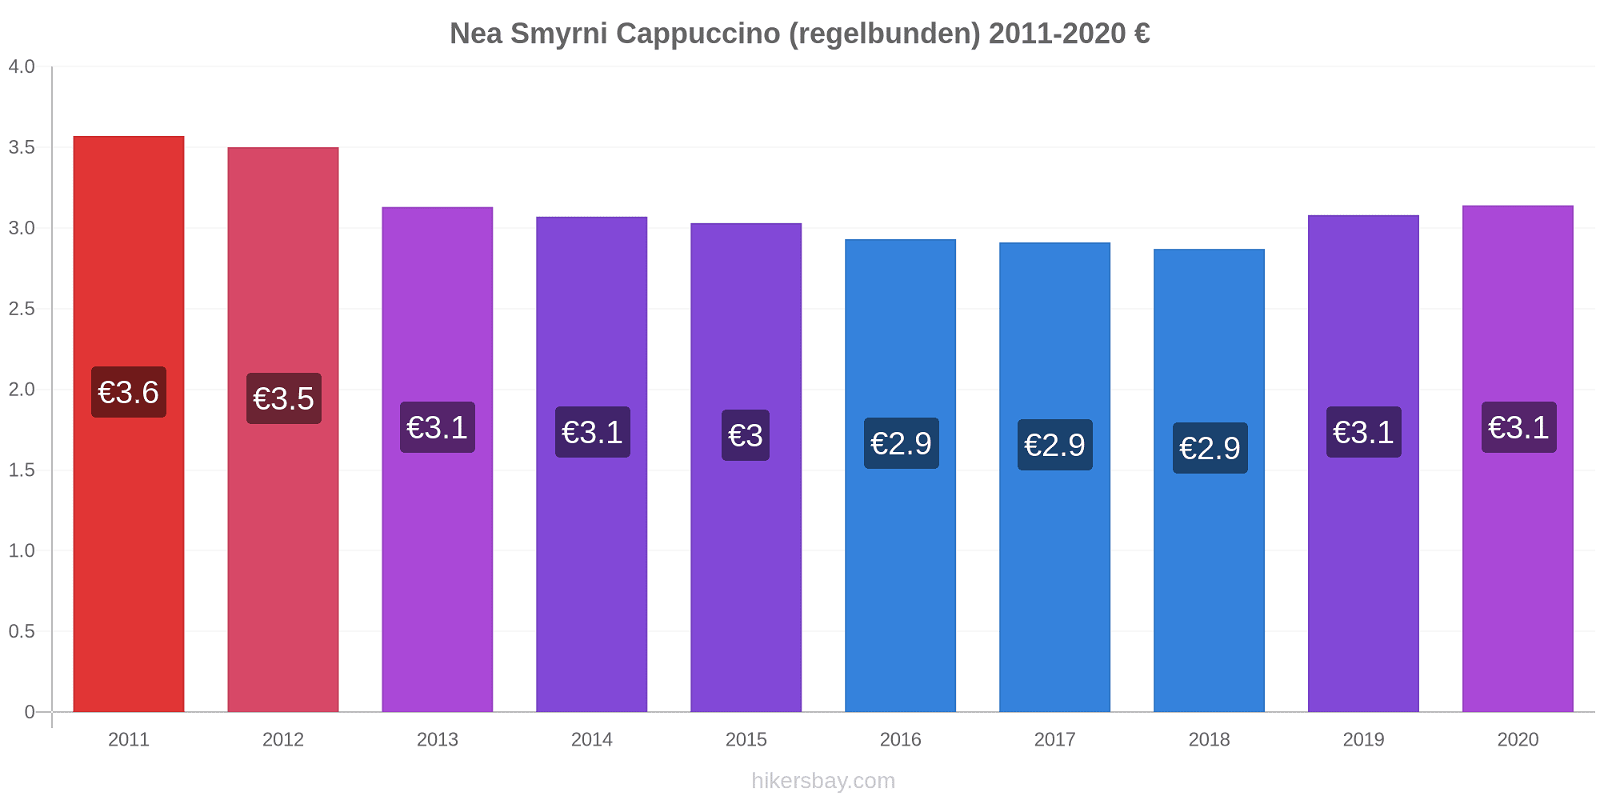 Nea Smyrni prisförändringar Cappuccino (regelbunden) hikersbay.com